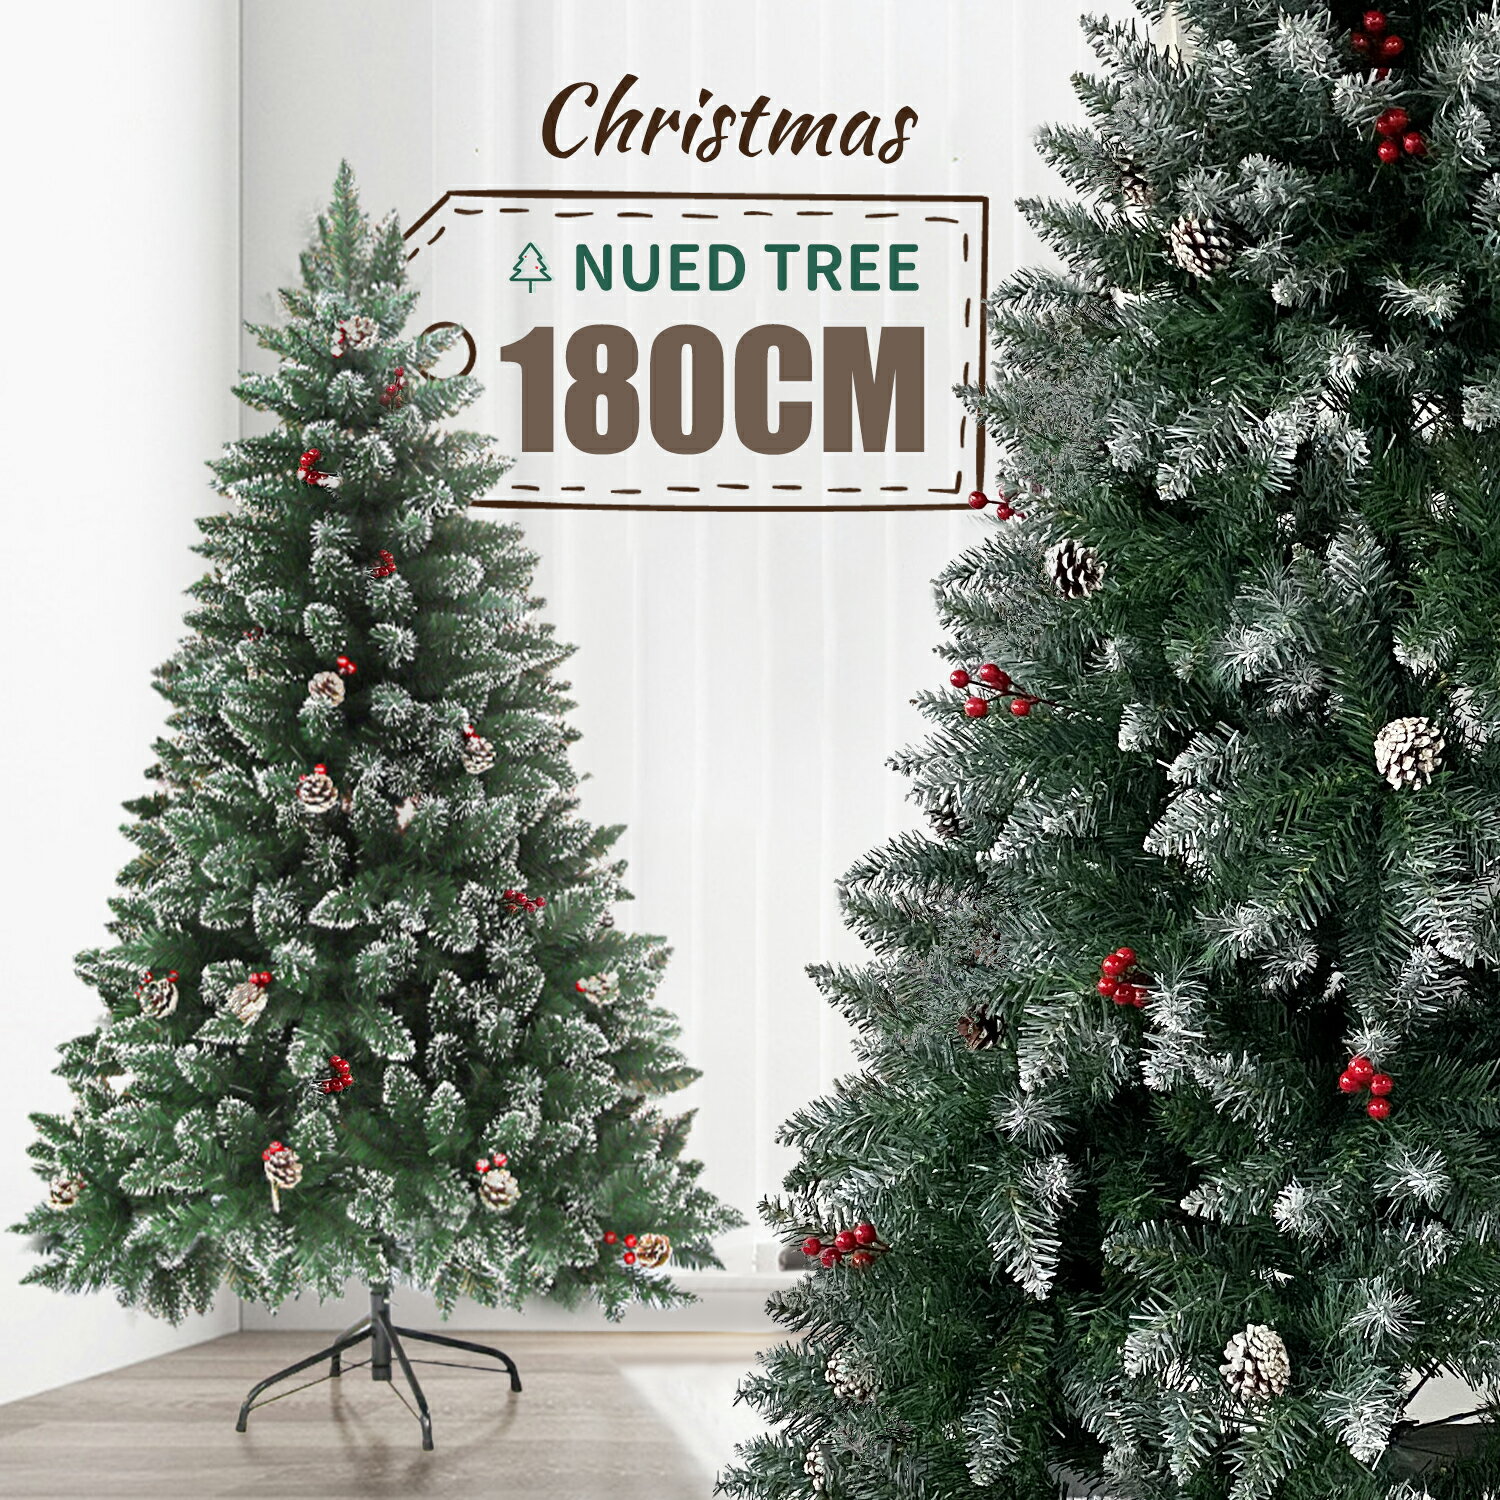 クリスマスツリー 180cm 北欧 おしゃれ ヌードツリー 豊富な枝数 2022ver. 樅 クラシック 高級 オーナメント なし おしゃれ 北欧風 まるで本物 組み立て5分 散らからない リアル クリスマス ツ…